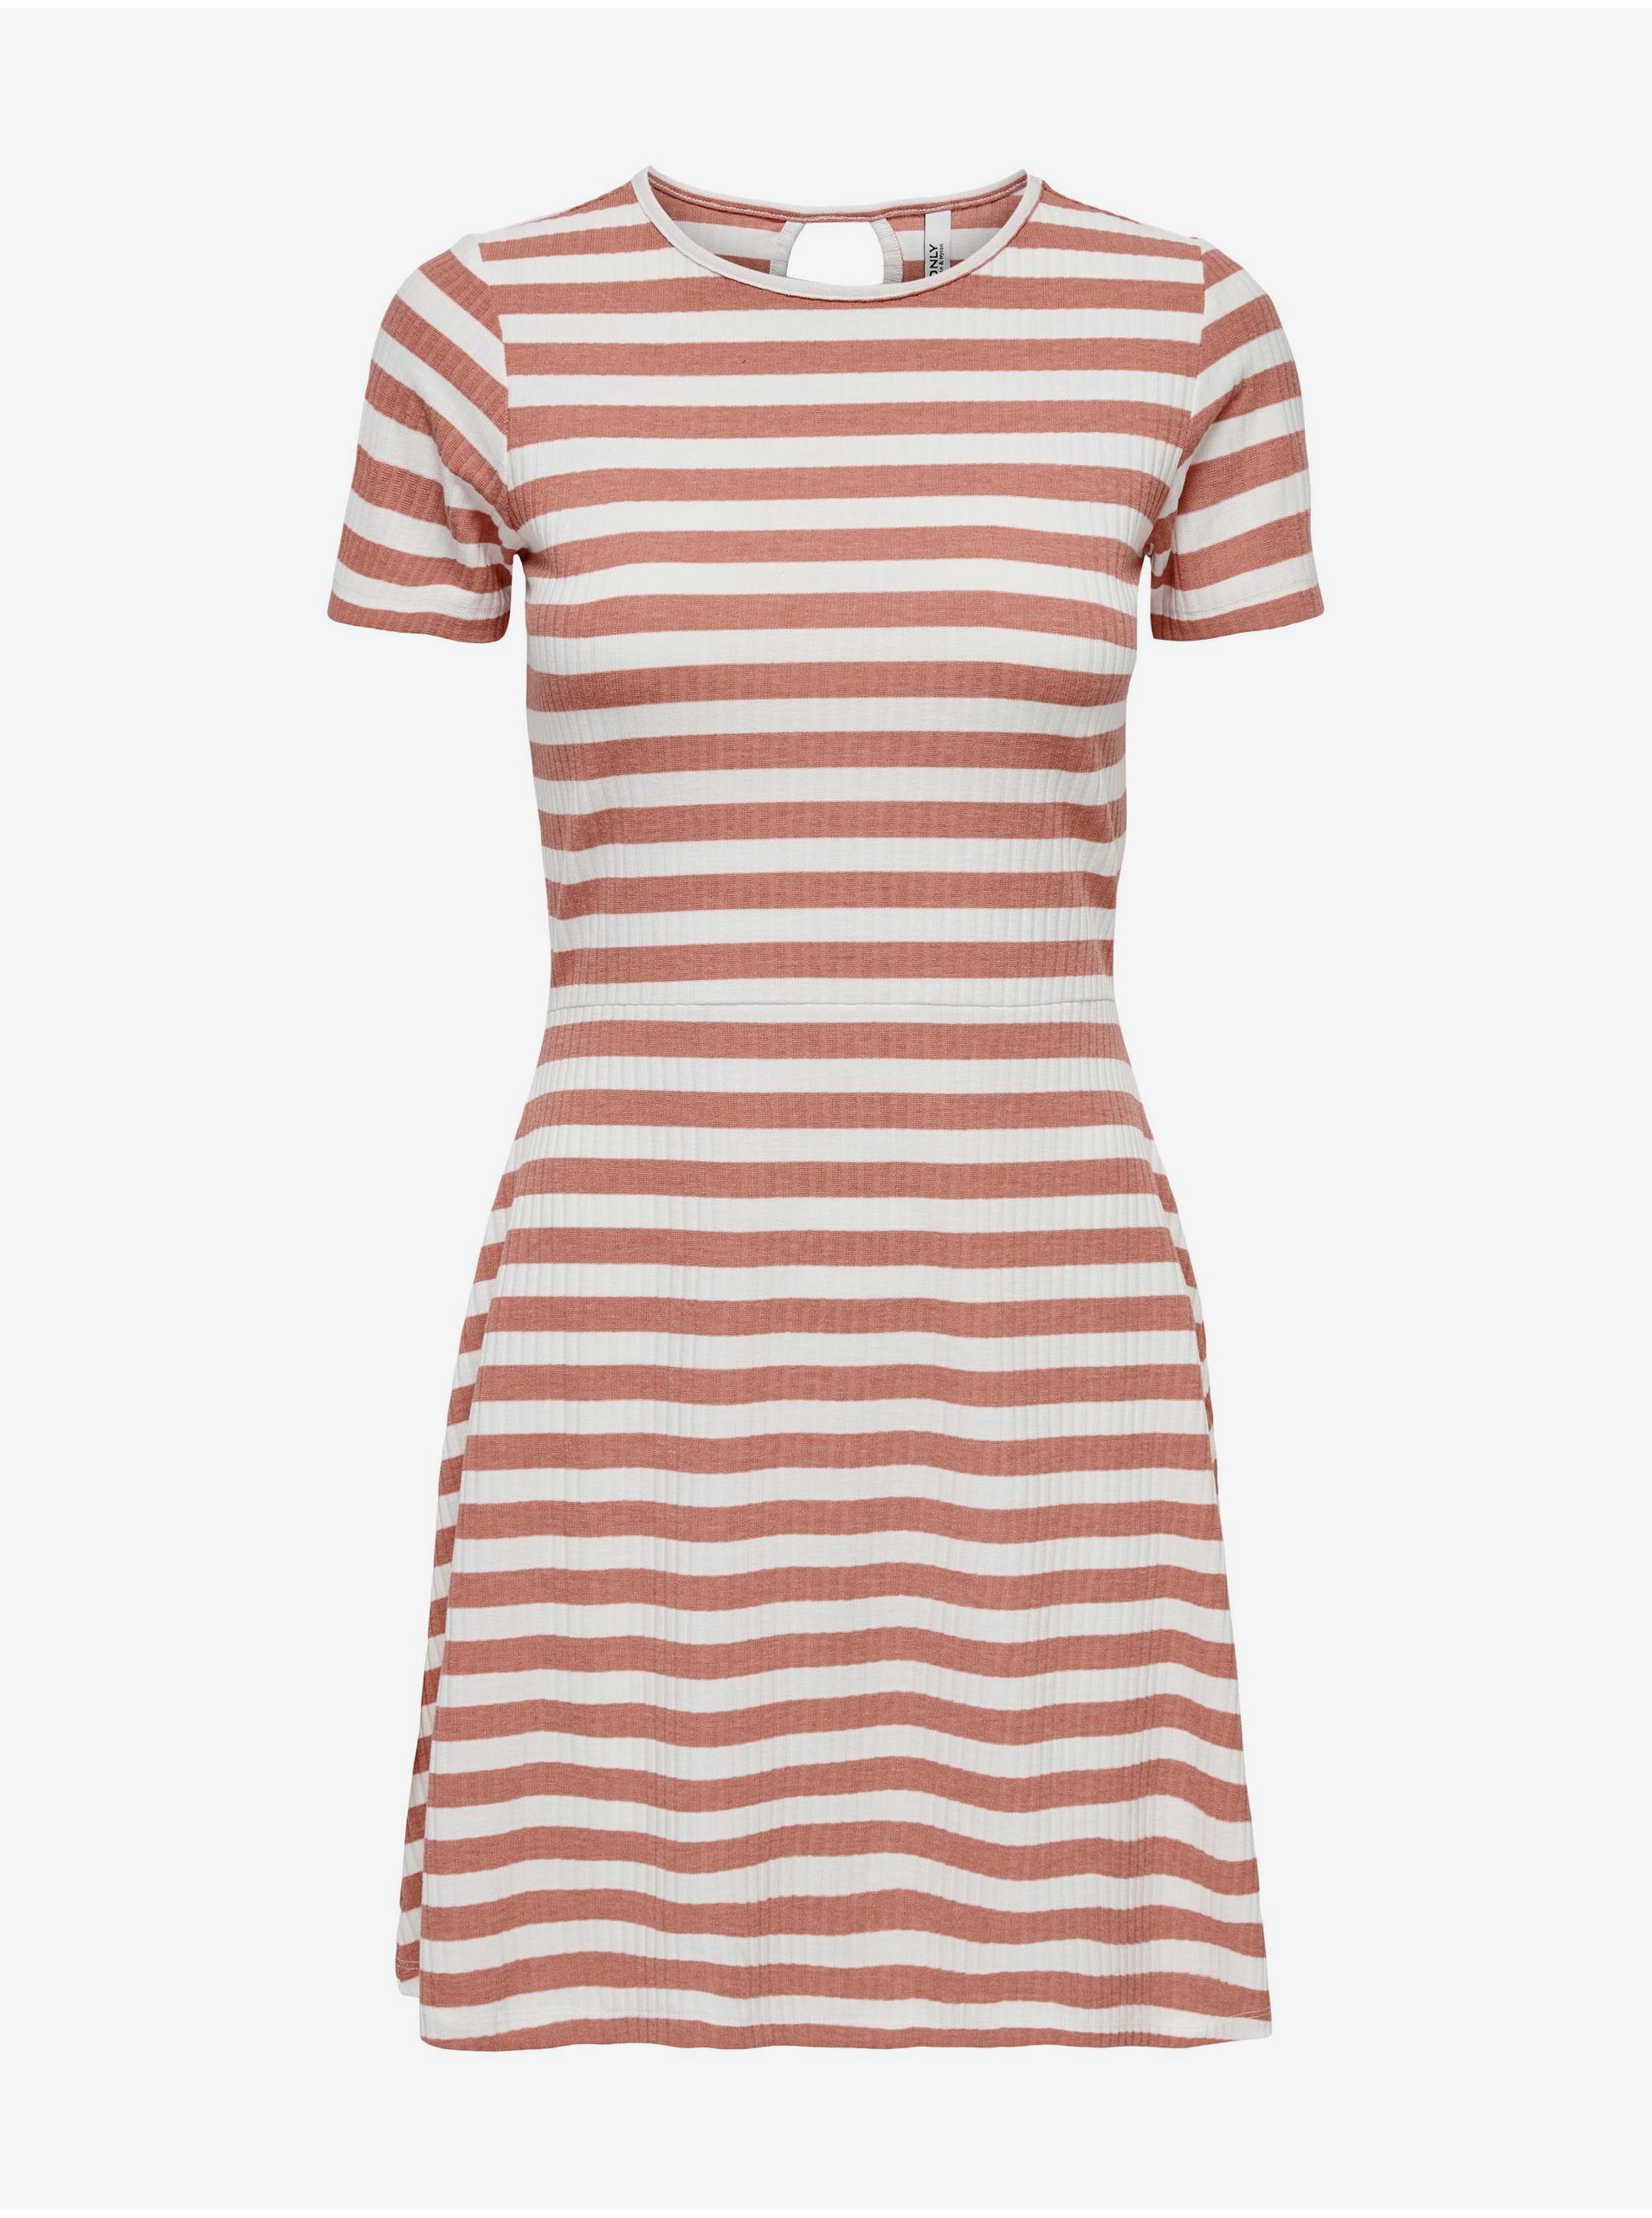 Lacno Letné a plážové šaty pre ženy ONLY - oranžová, biela